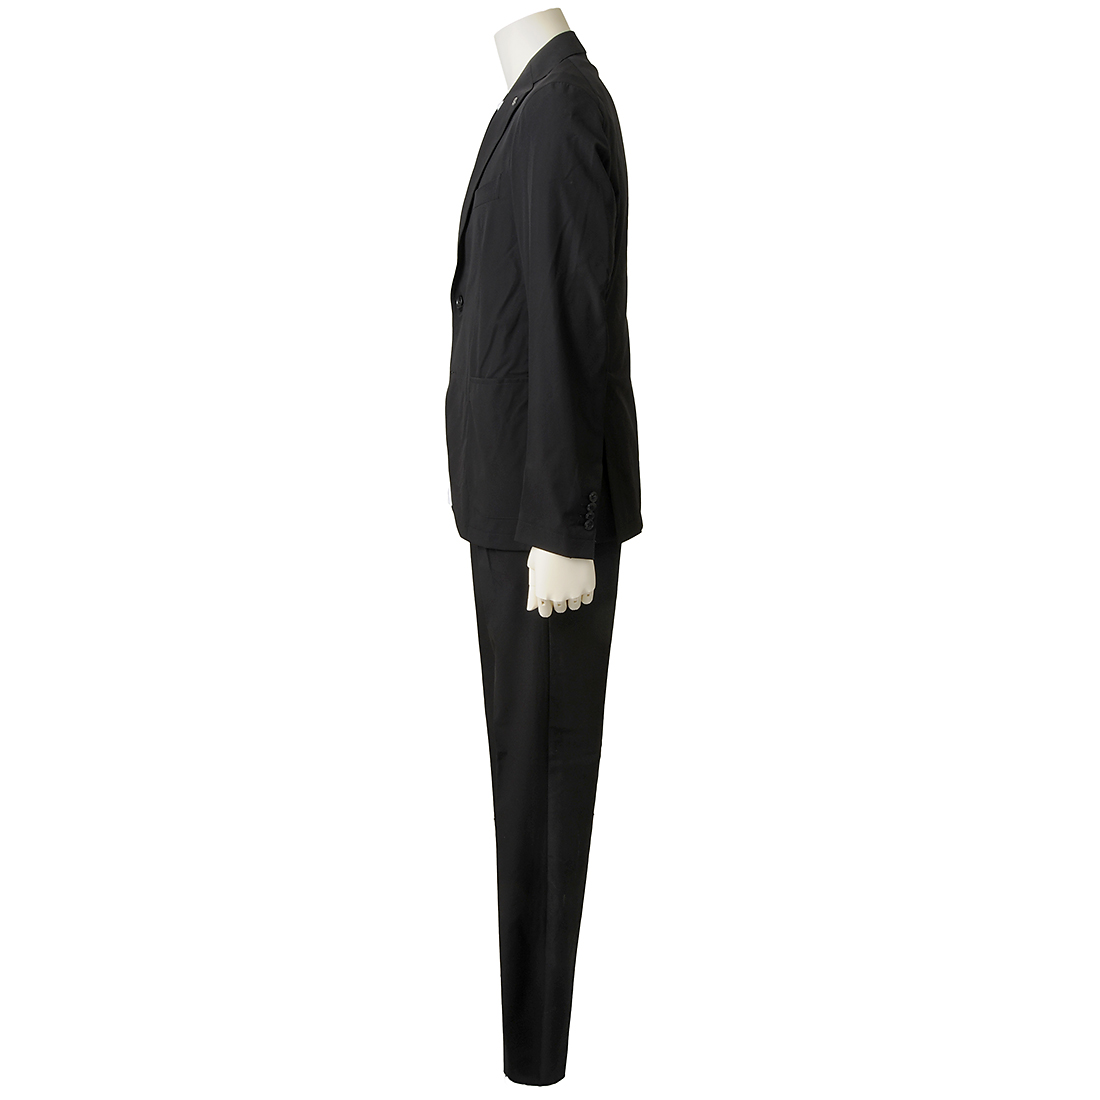 TAGLIATORE Tagliatore suit men's black 880007 N1138